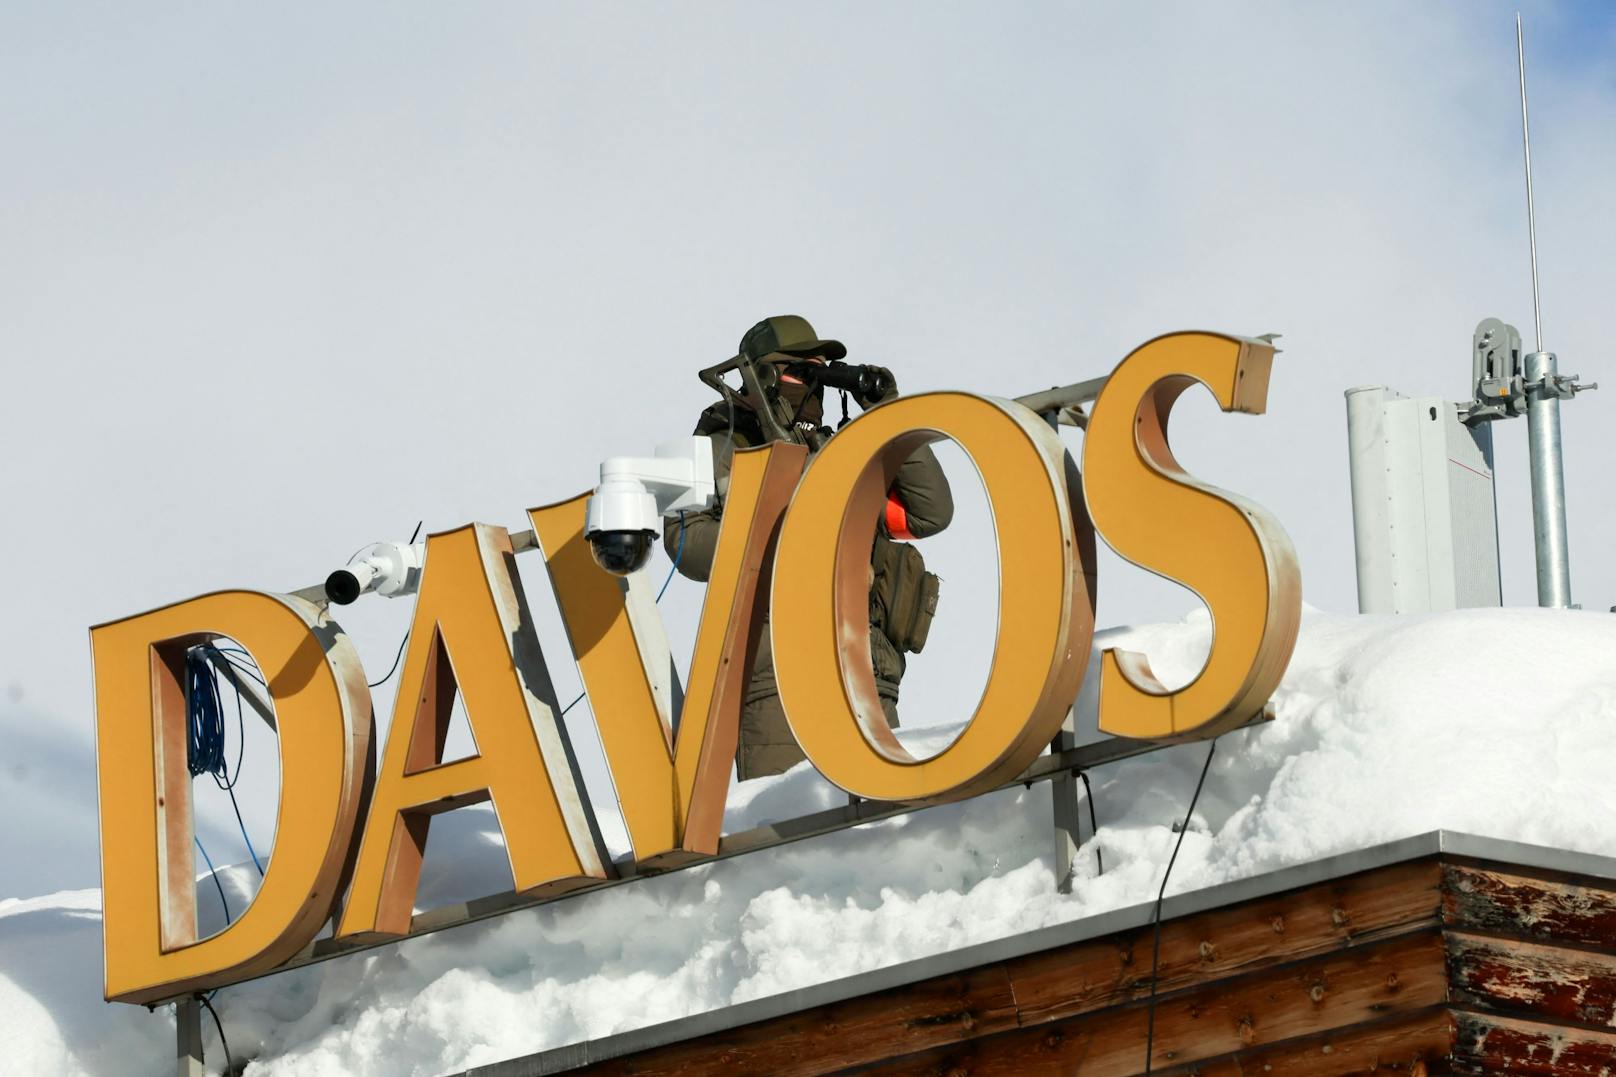 Am Montag startet das Weltwirtschaftsforum im schweizerischen Davos. Erwartet werden über 2500 Teilnehmerinnen und Teilnehmer aus Wirtschaft, Politik, Wissenschaft und Kultur.